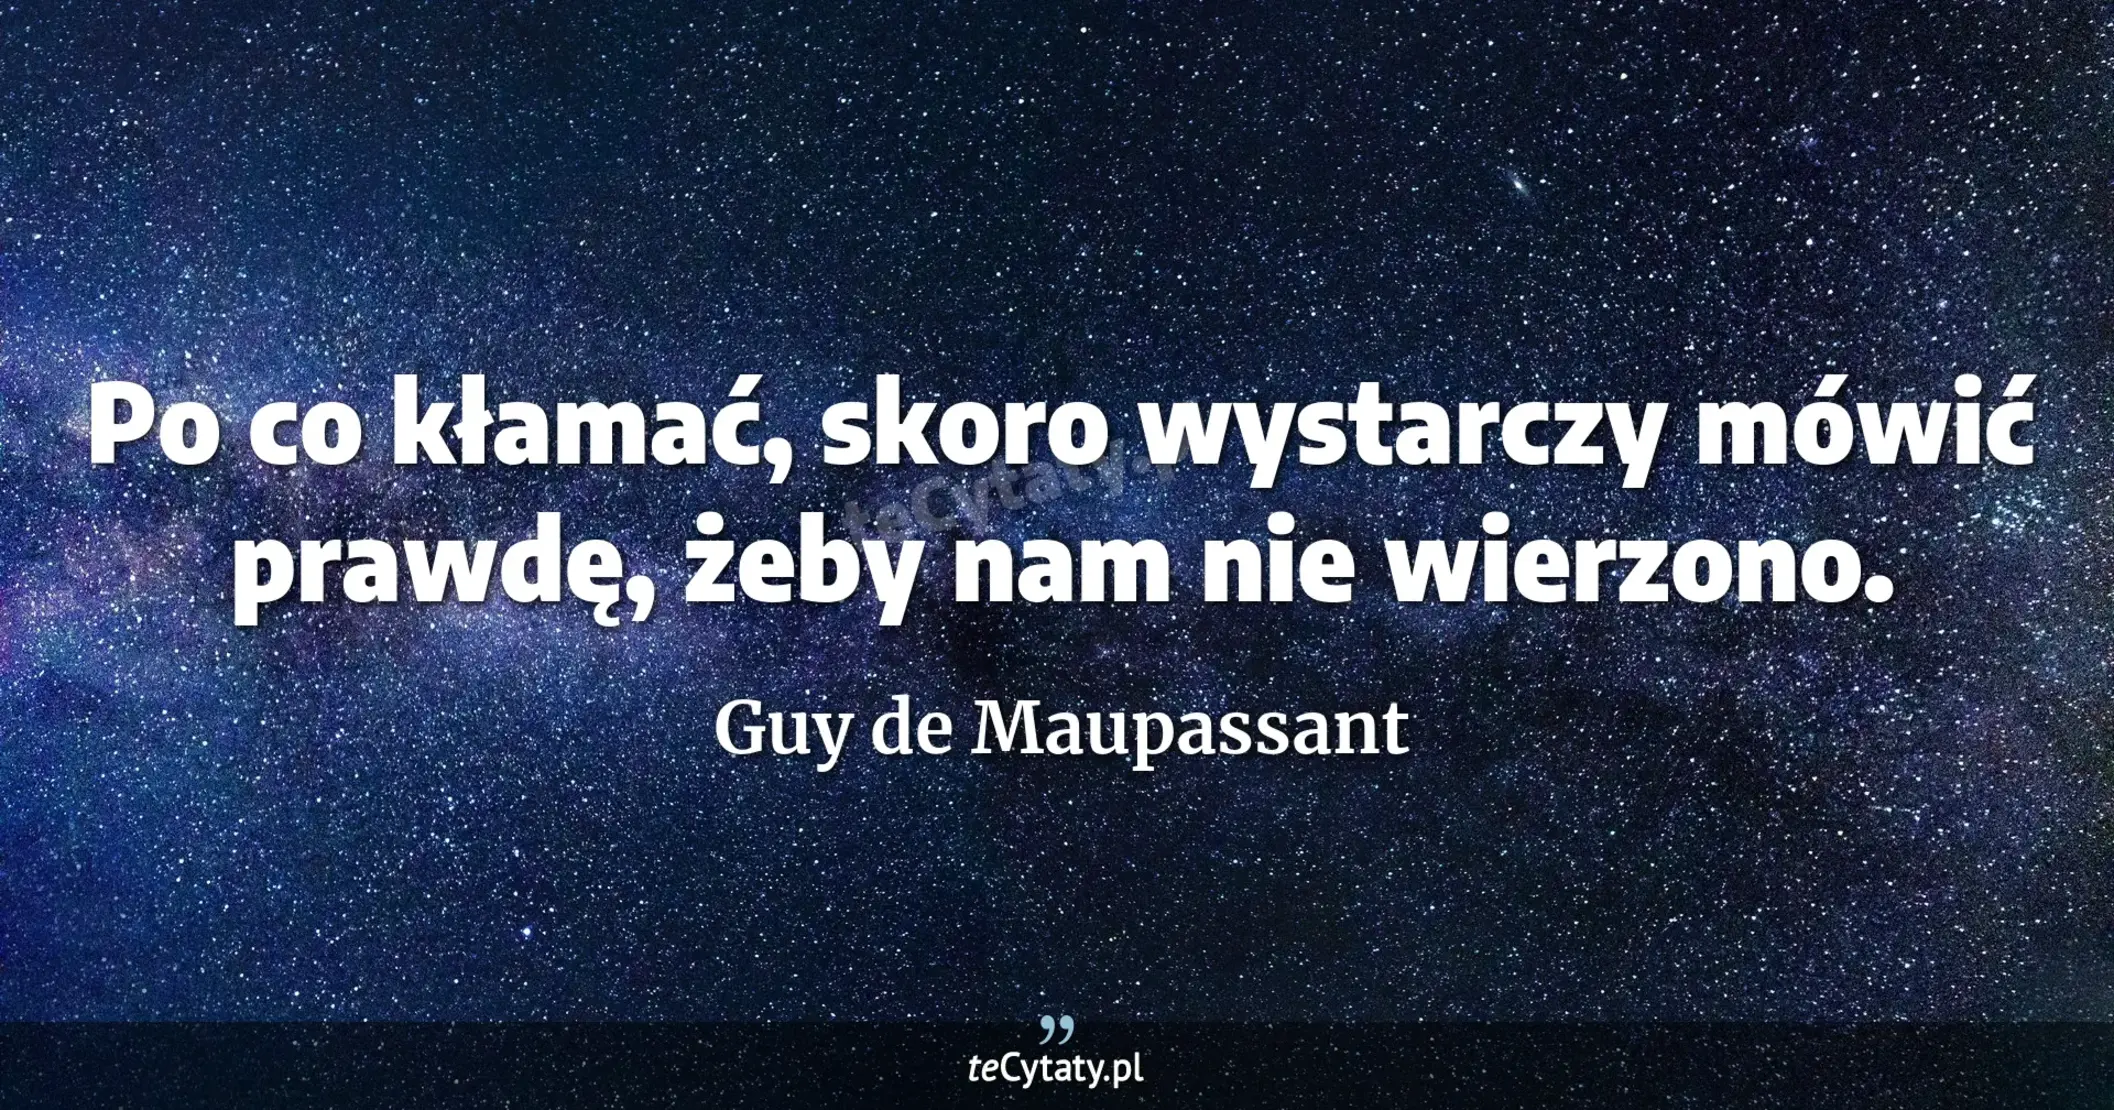 Po co kłamać, skoro wystarczy mówić prawdę, żeby nam nie wierzono. - Guy de Maupassant